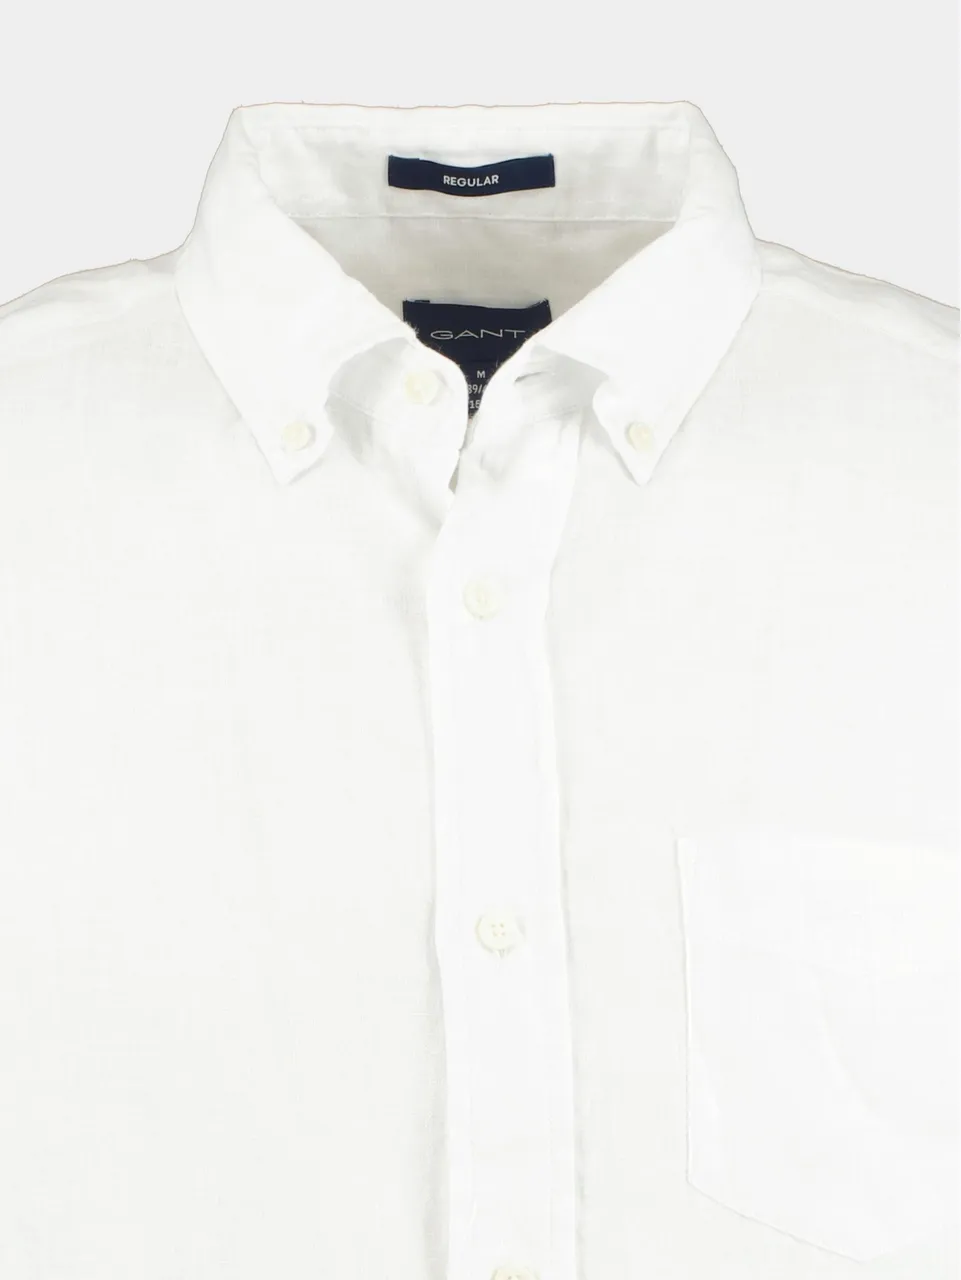 Gant Casual hemd lange mouw reg linen shirt 3230085/110